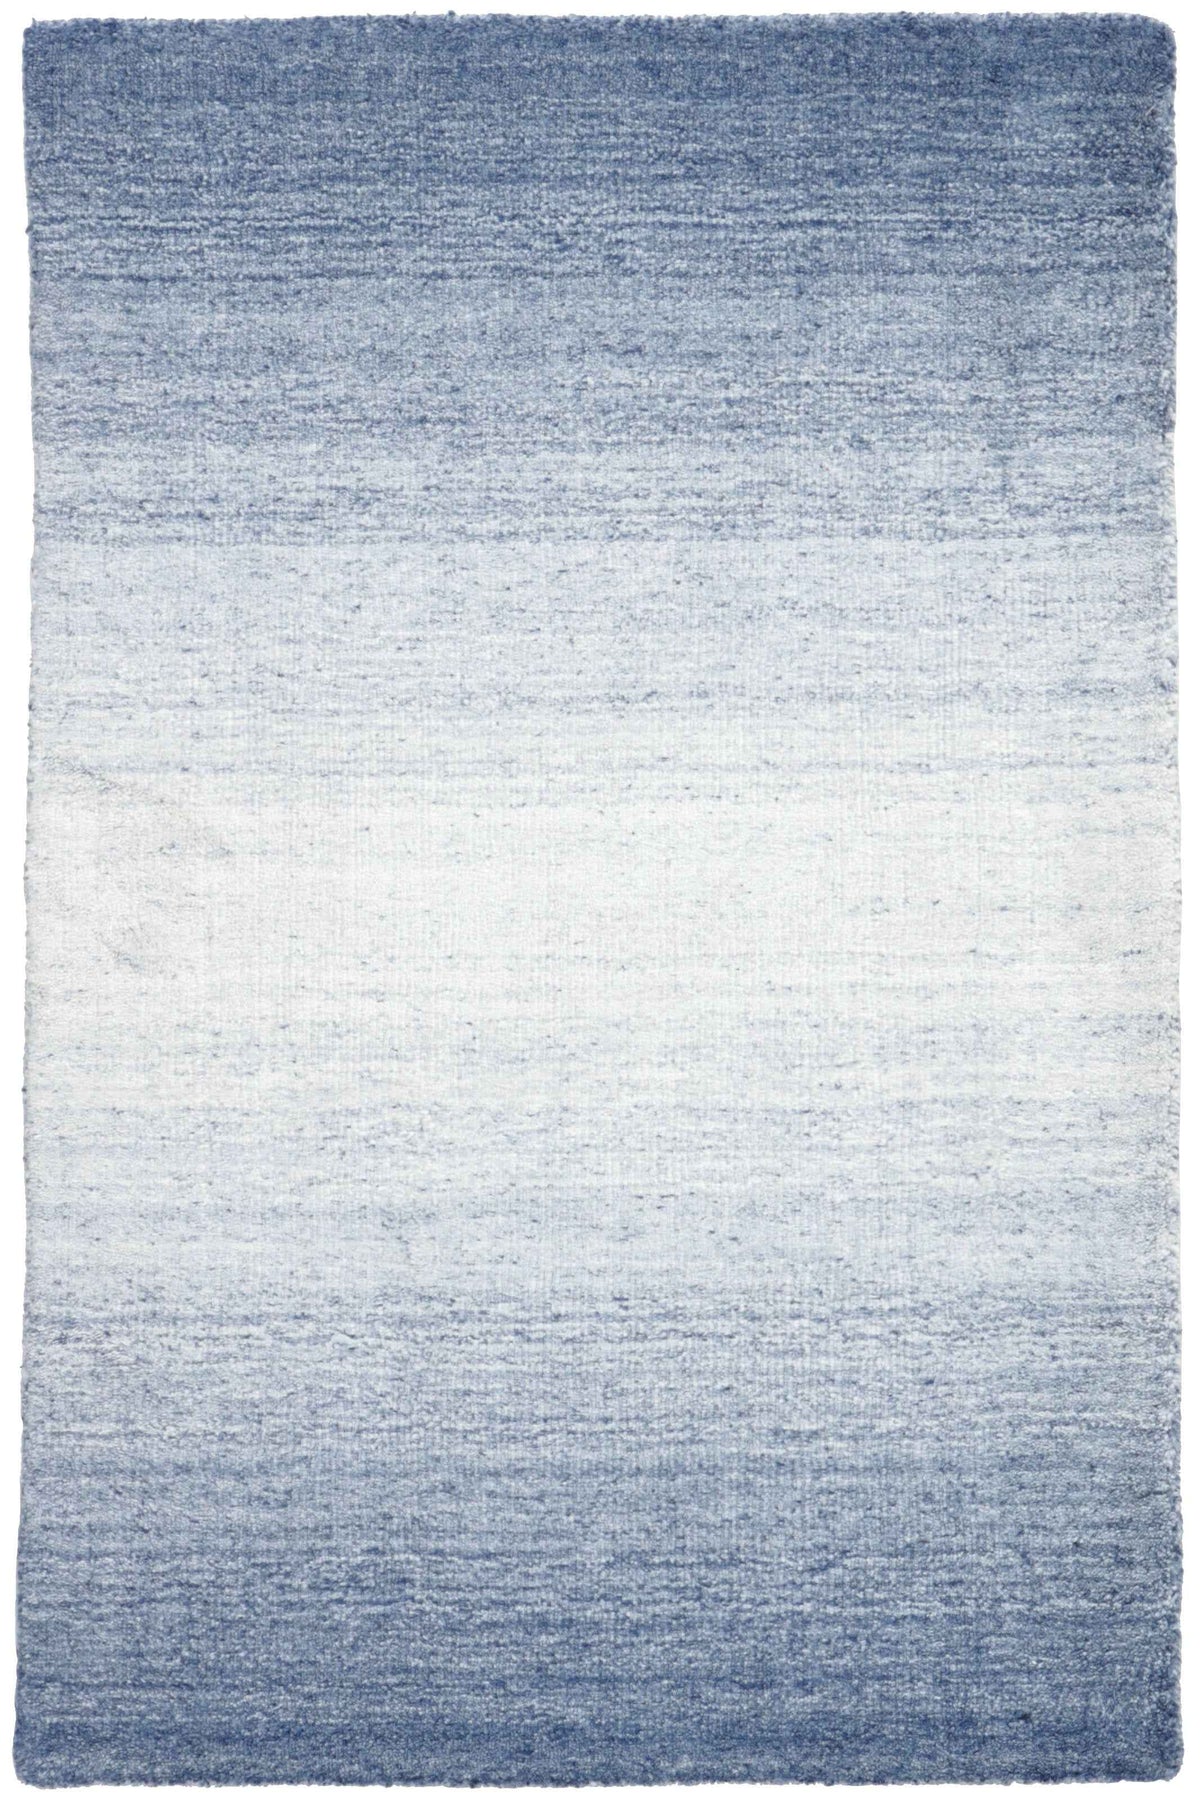 240x170 cm  Indian Wool/Viscose Blue Rug-Blau, Blue